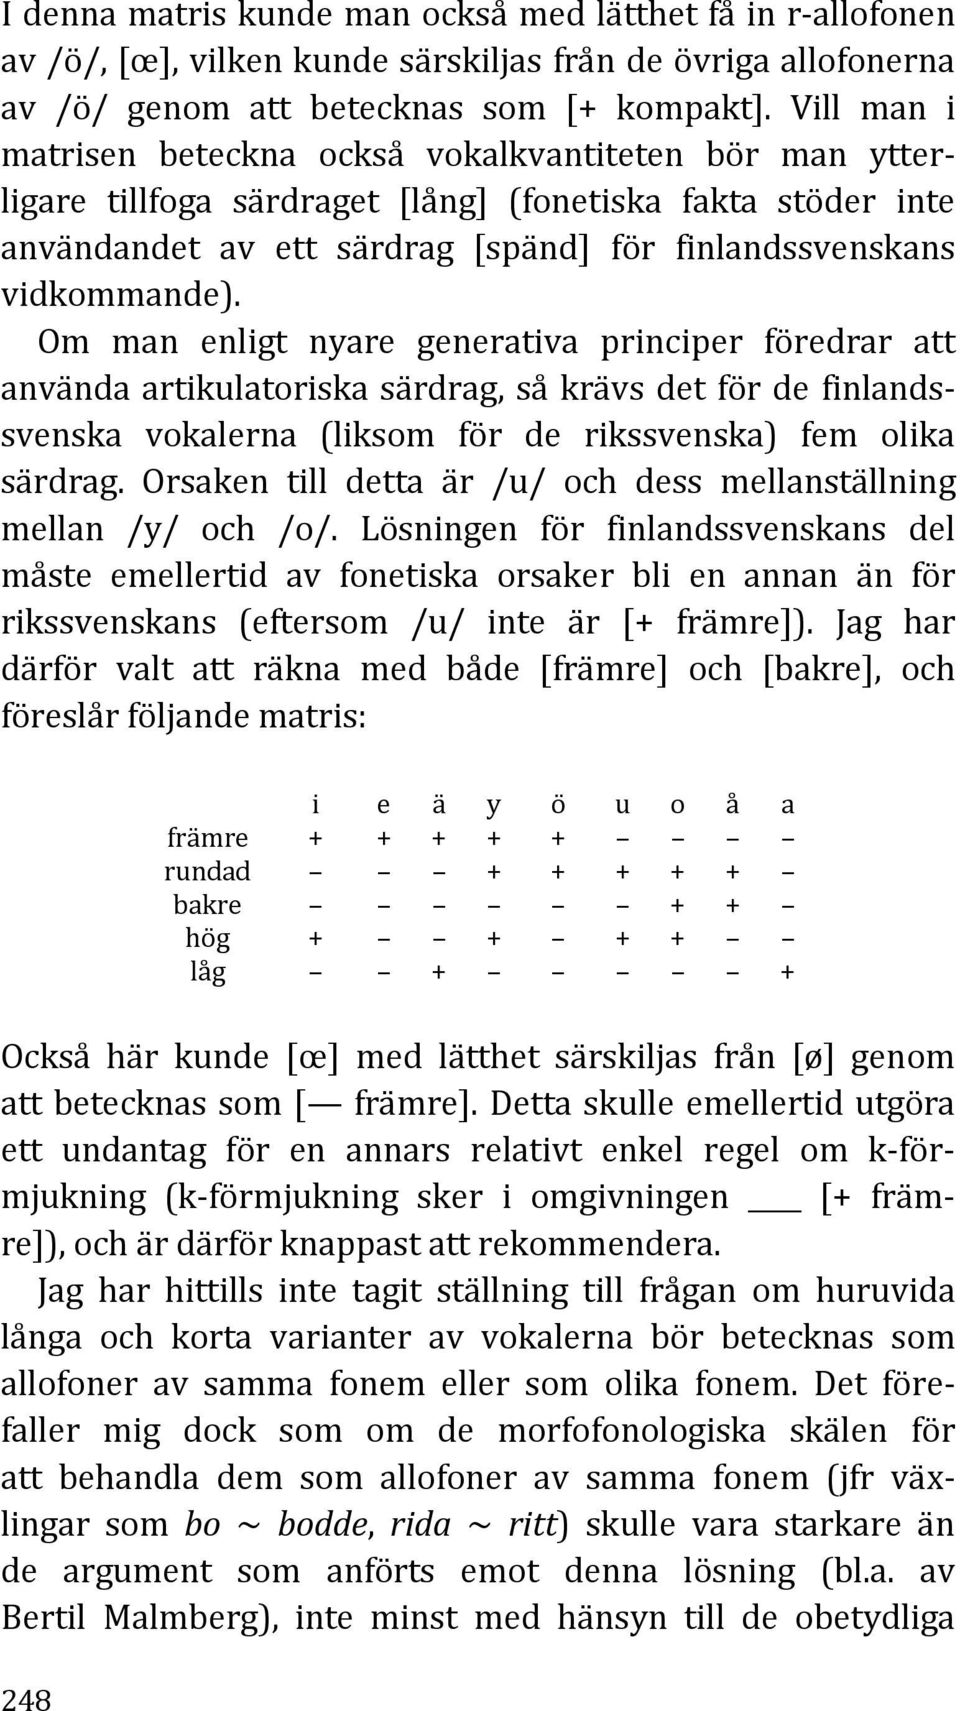 Om man enligt nyare generativa principer föredrar att använda artikulatoriska särdrag, så krävs det för de finlandssvenska vokalerna (liksom för de rikssvenska) fem olika särdrag.